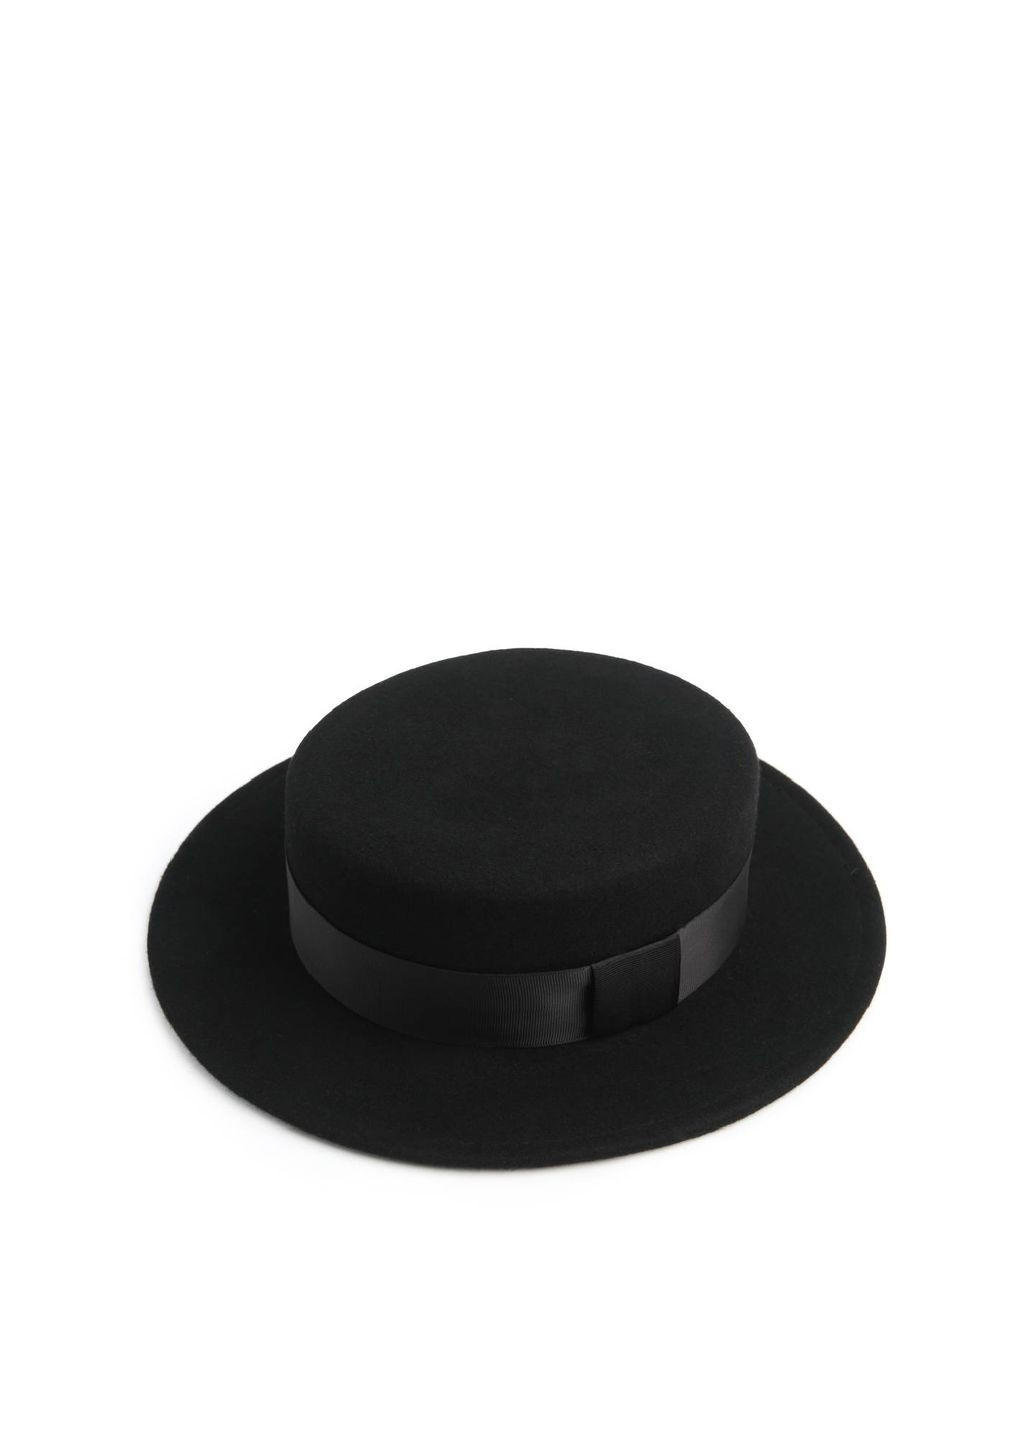 Шляпа канотье женская с лентой фетр черная LuckyLOOK 659-965 (289478403)